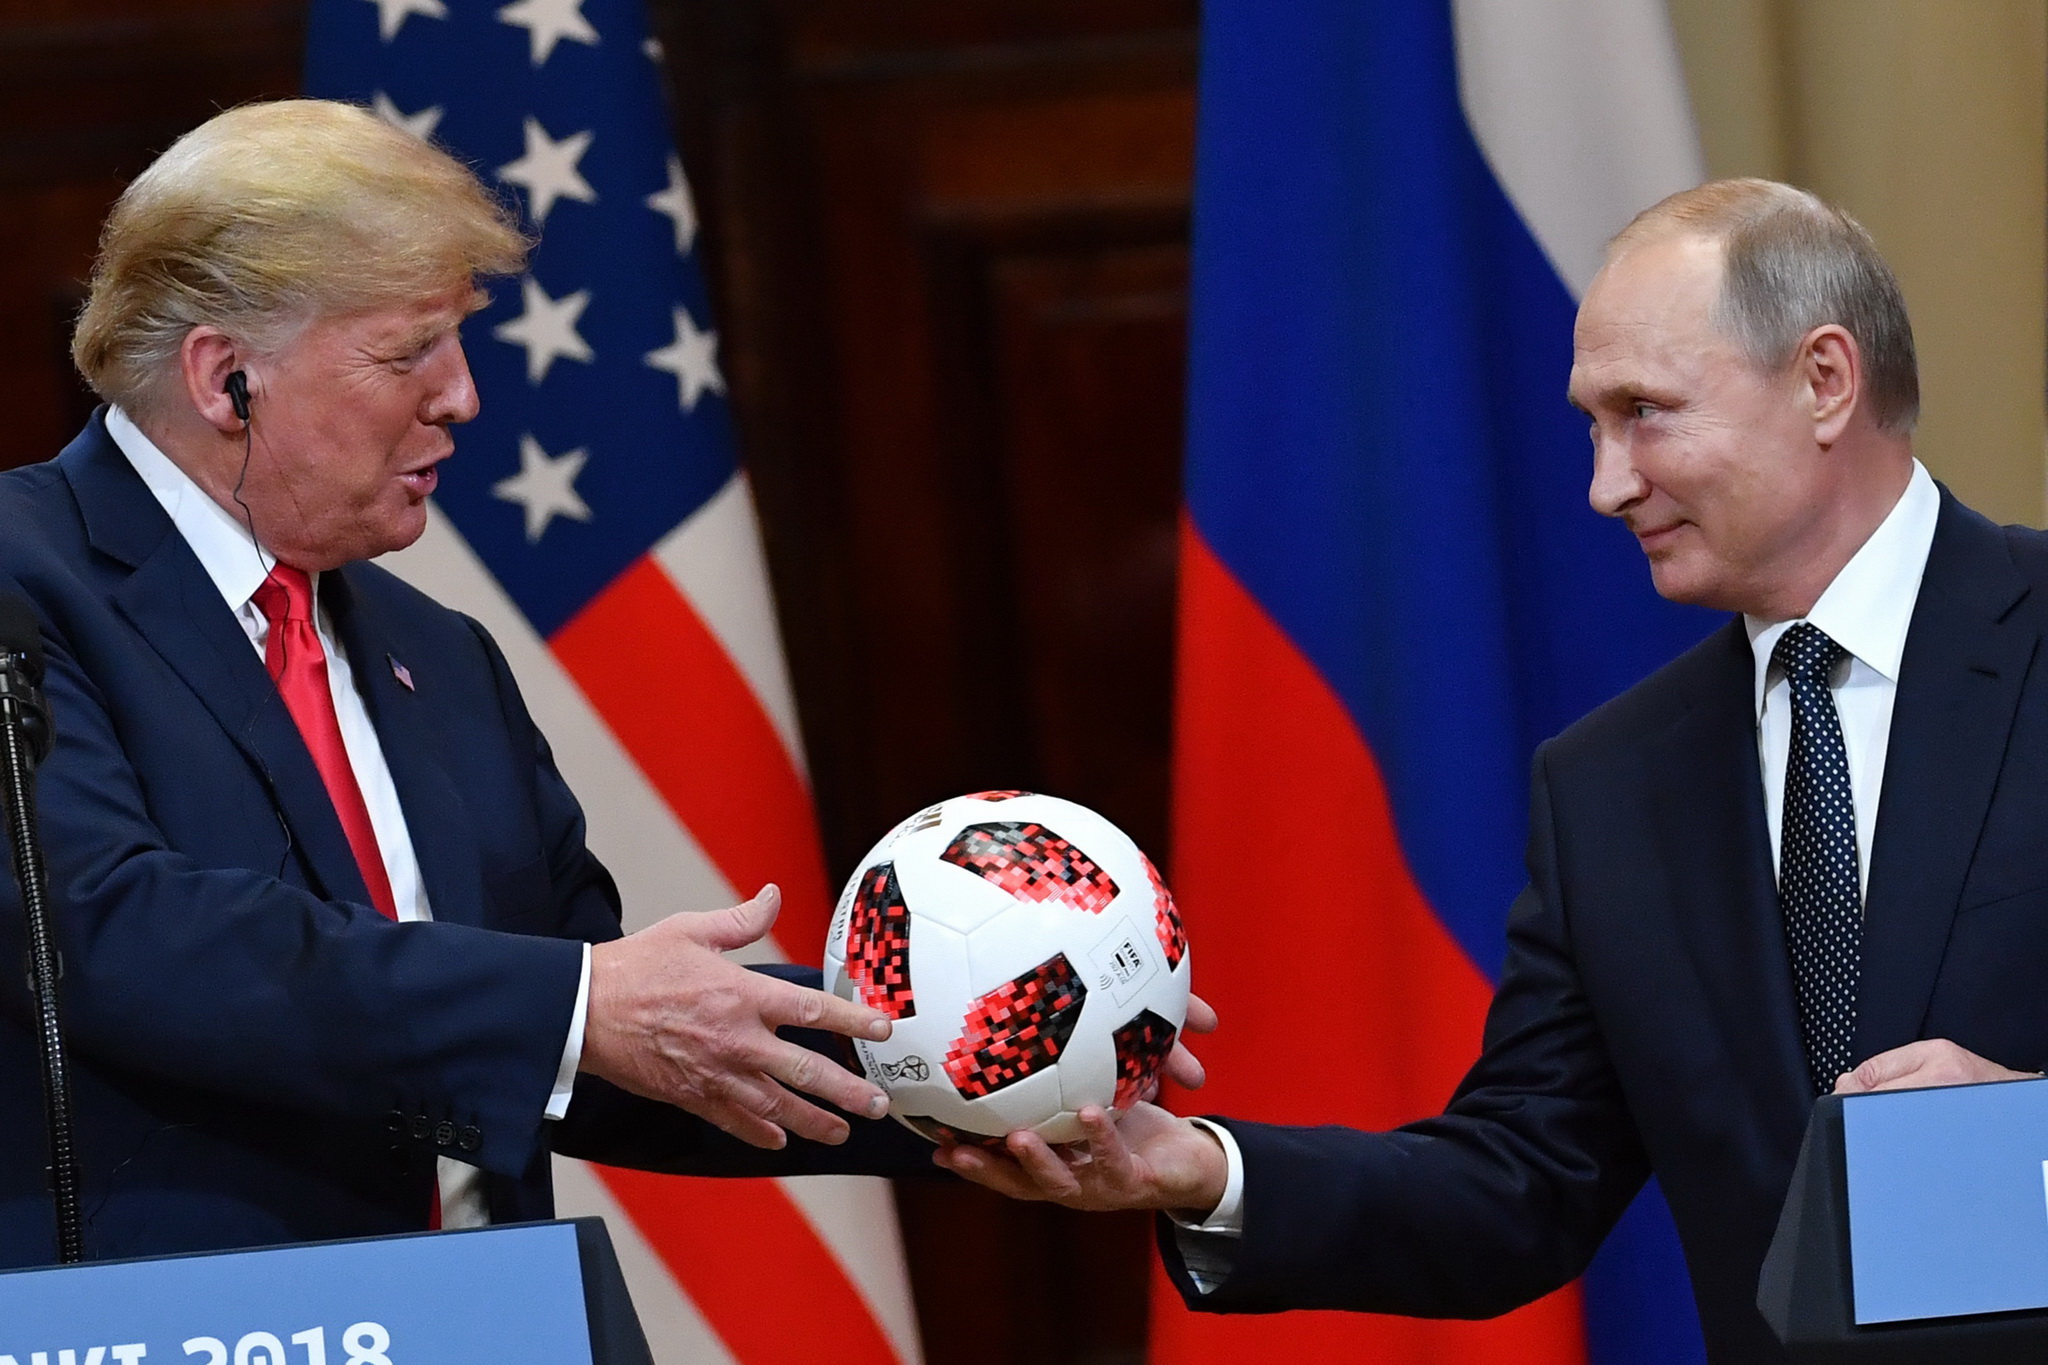 Tổng thống Mỹ Donald Trump (trái) nhận món quà ý nghĩa từ Tổng thống Nga Vladimir Putin trong cuộc họp báo chung kết thúc Hội nghị thượng đỉnh ở Helsinki, Phần Lan ngày 16/7. (Nguồn: AFP/TTXVN)